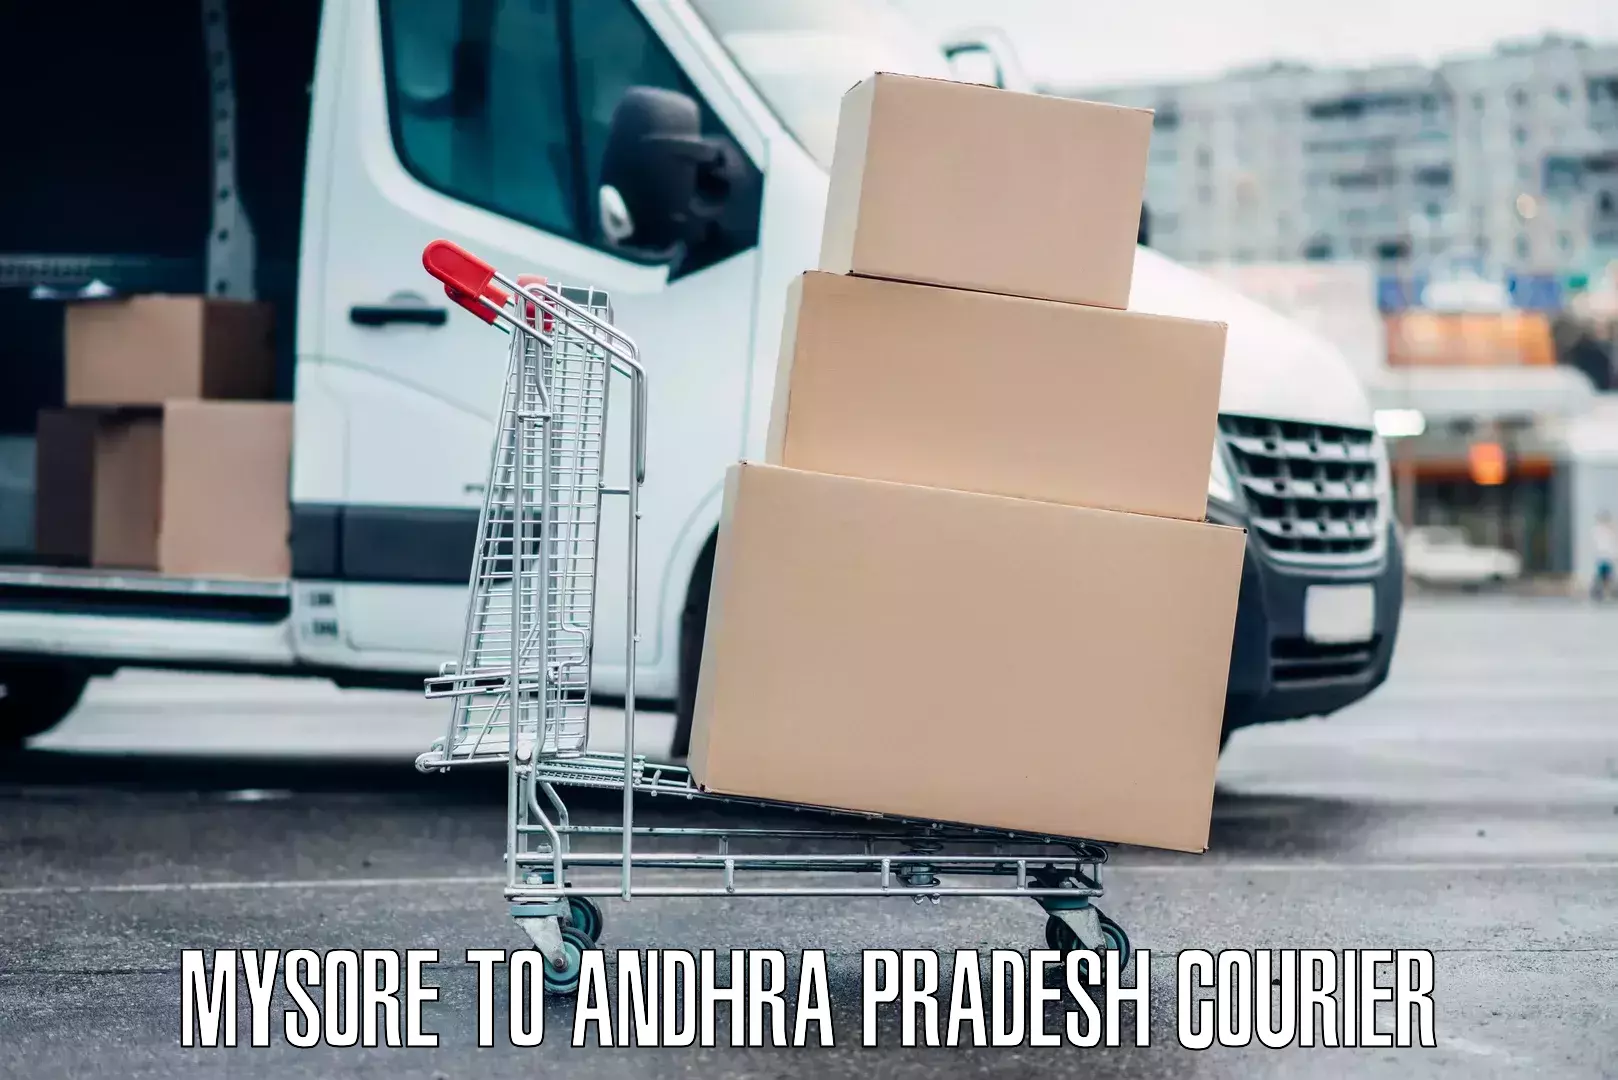 Luggage delivery app Mysore to Andhra Pradesh